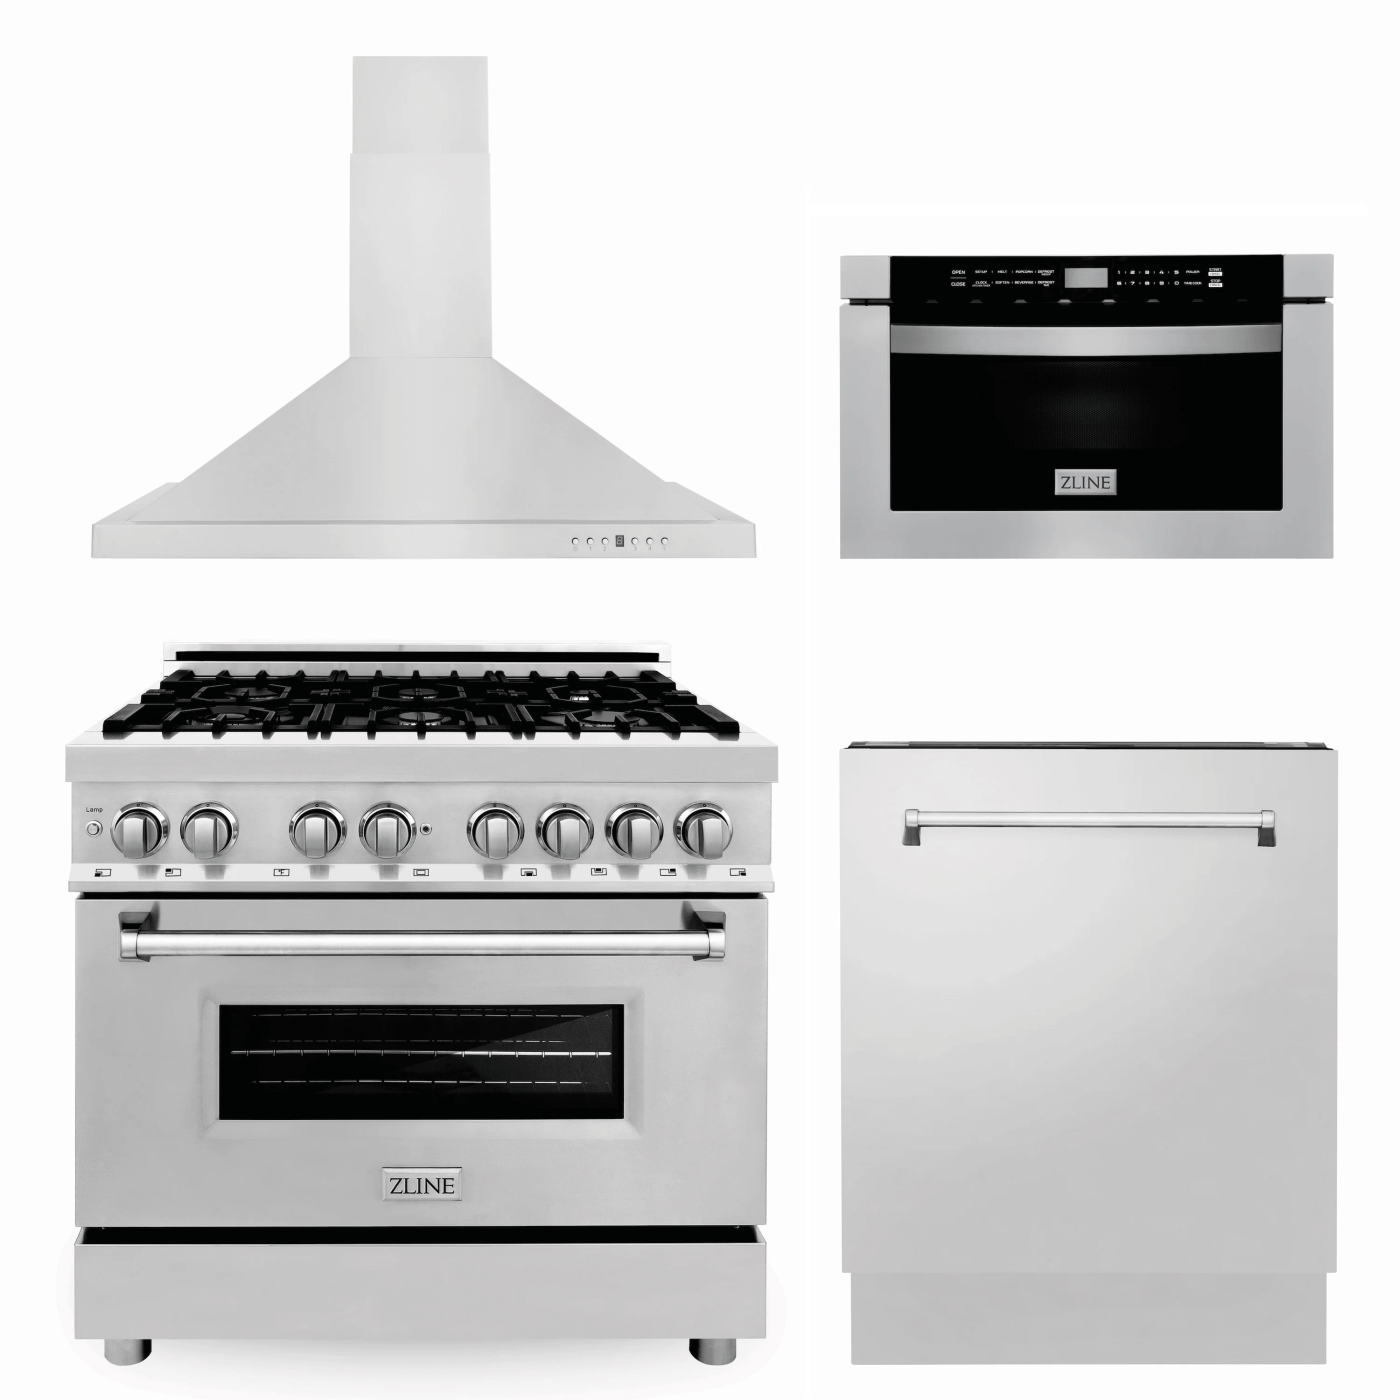 ZLINE Kitchen Appliance - white background